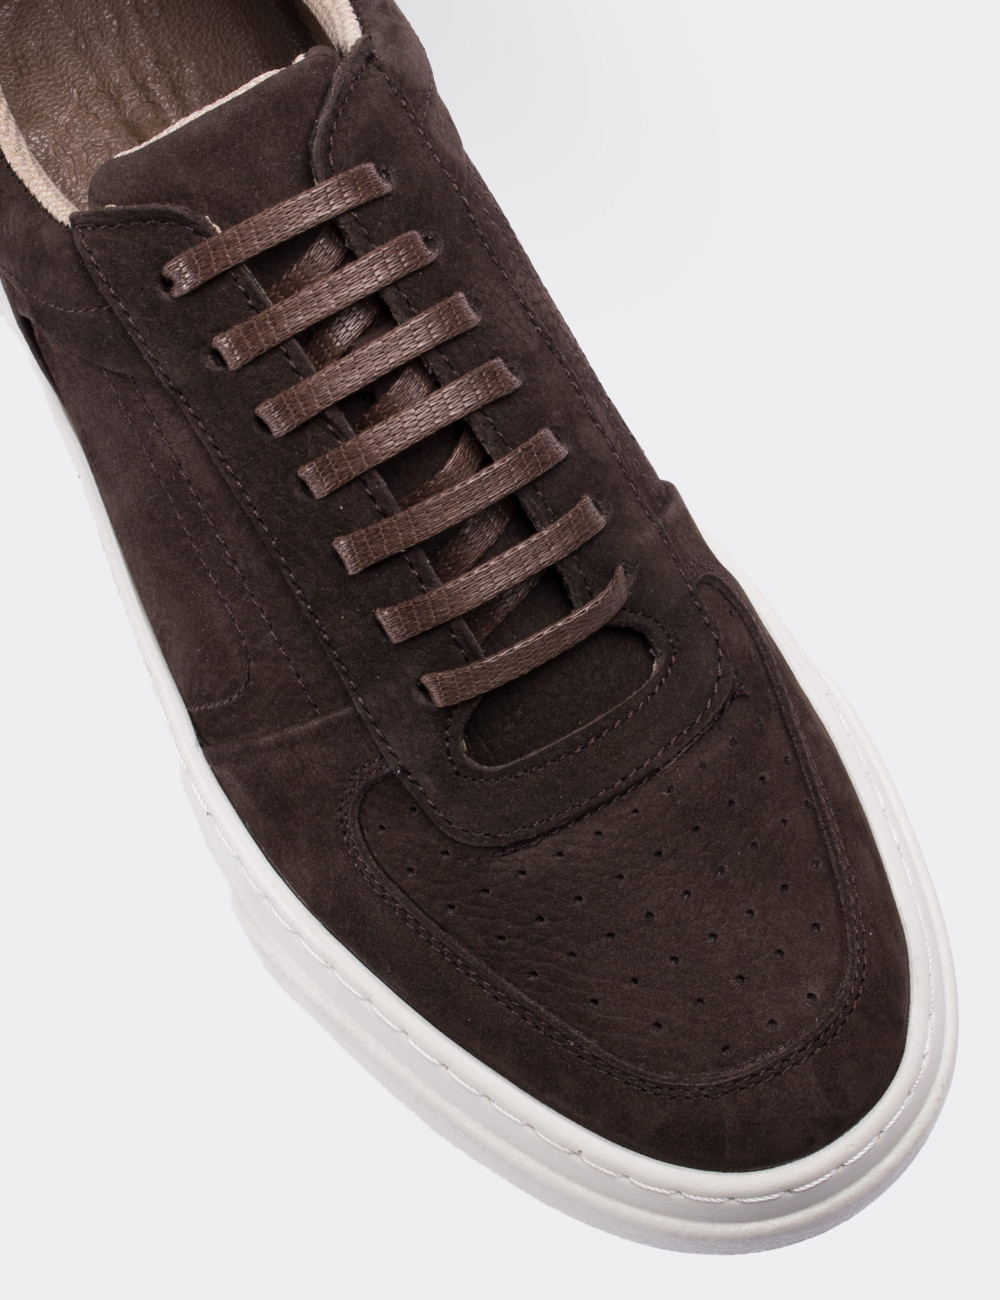 Brown Nubuck Leather Sneakers - 01716MKHVP01